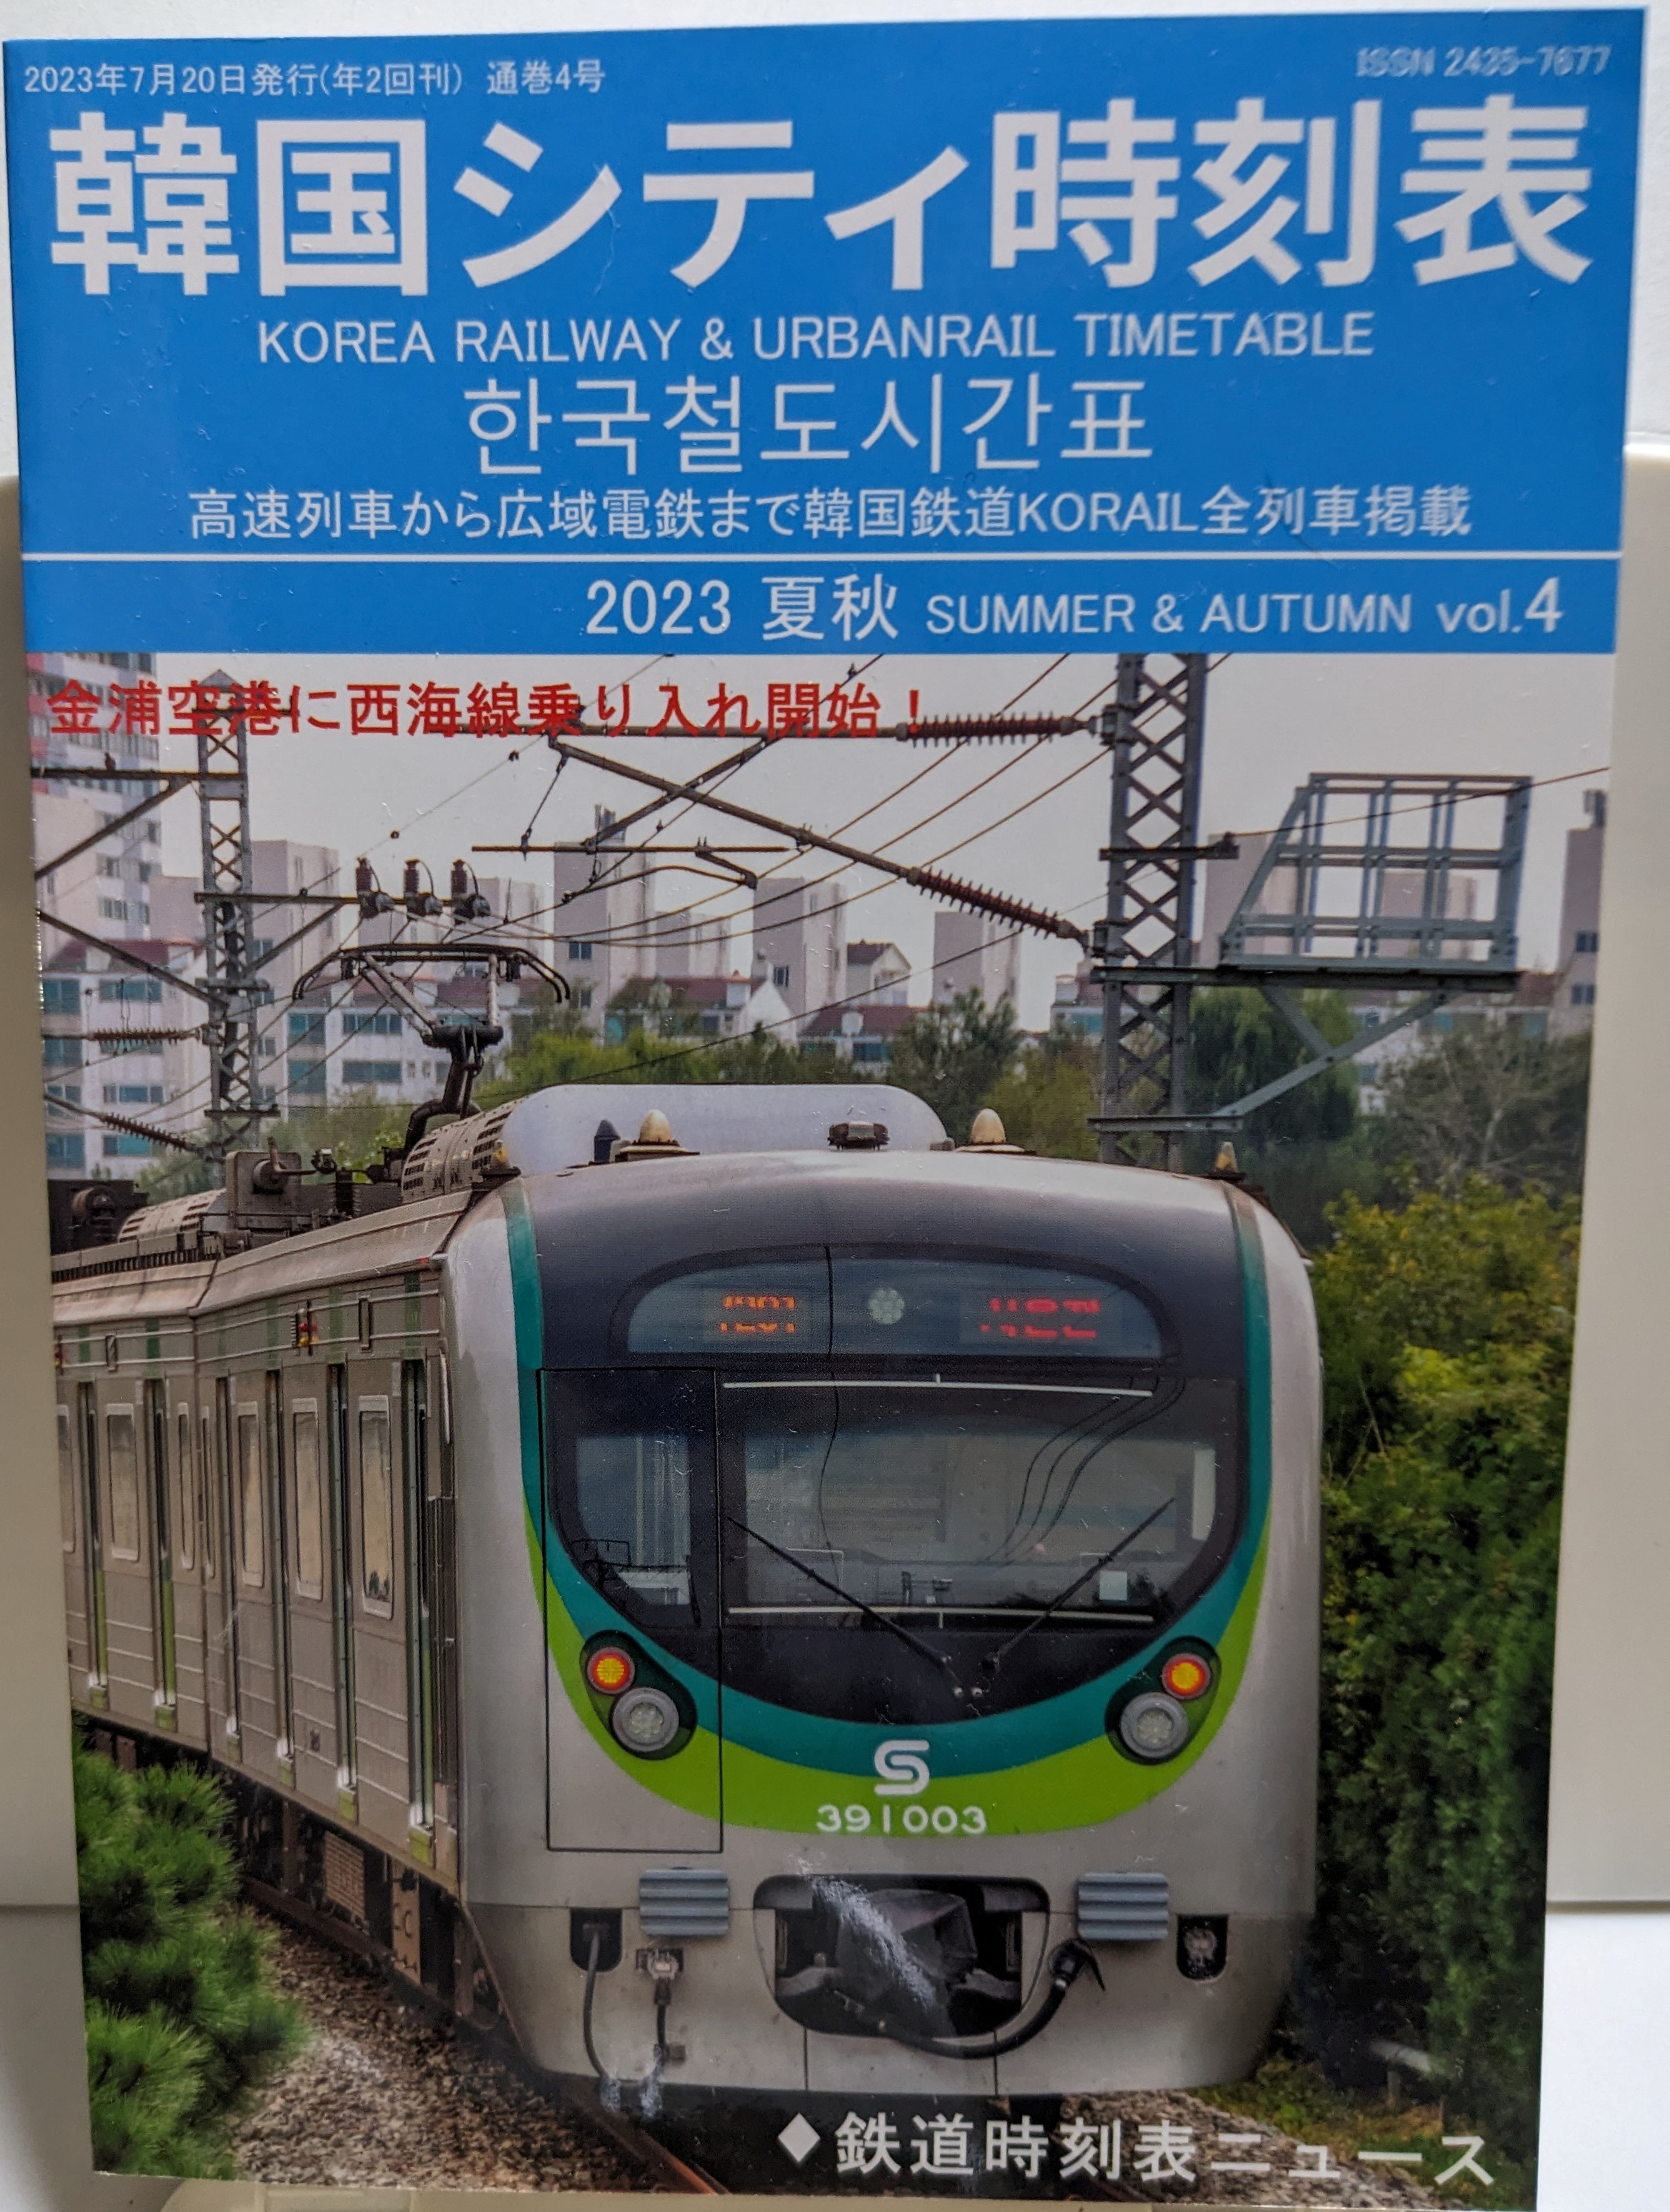 新入荷情報：韓国シティ時刻表2023夏秋vol.4が入荷しました。